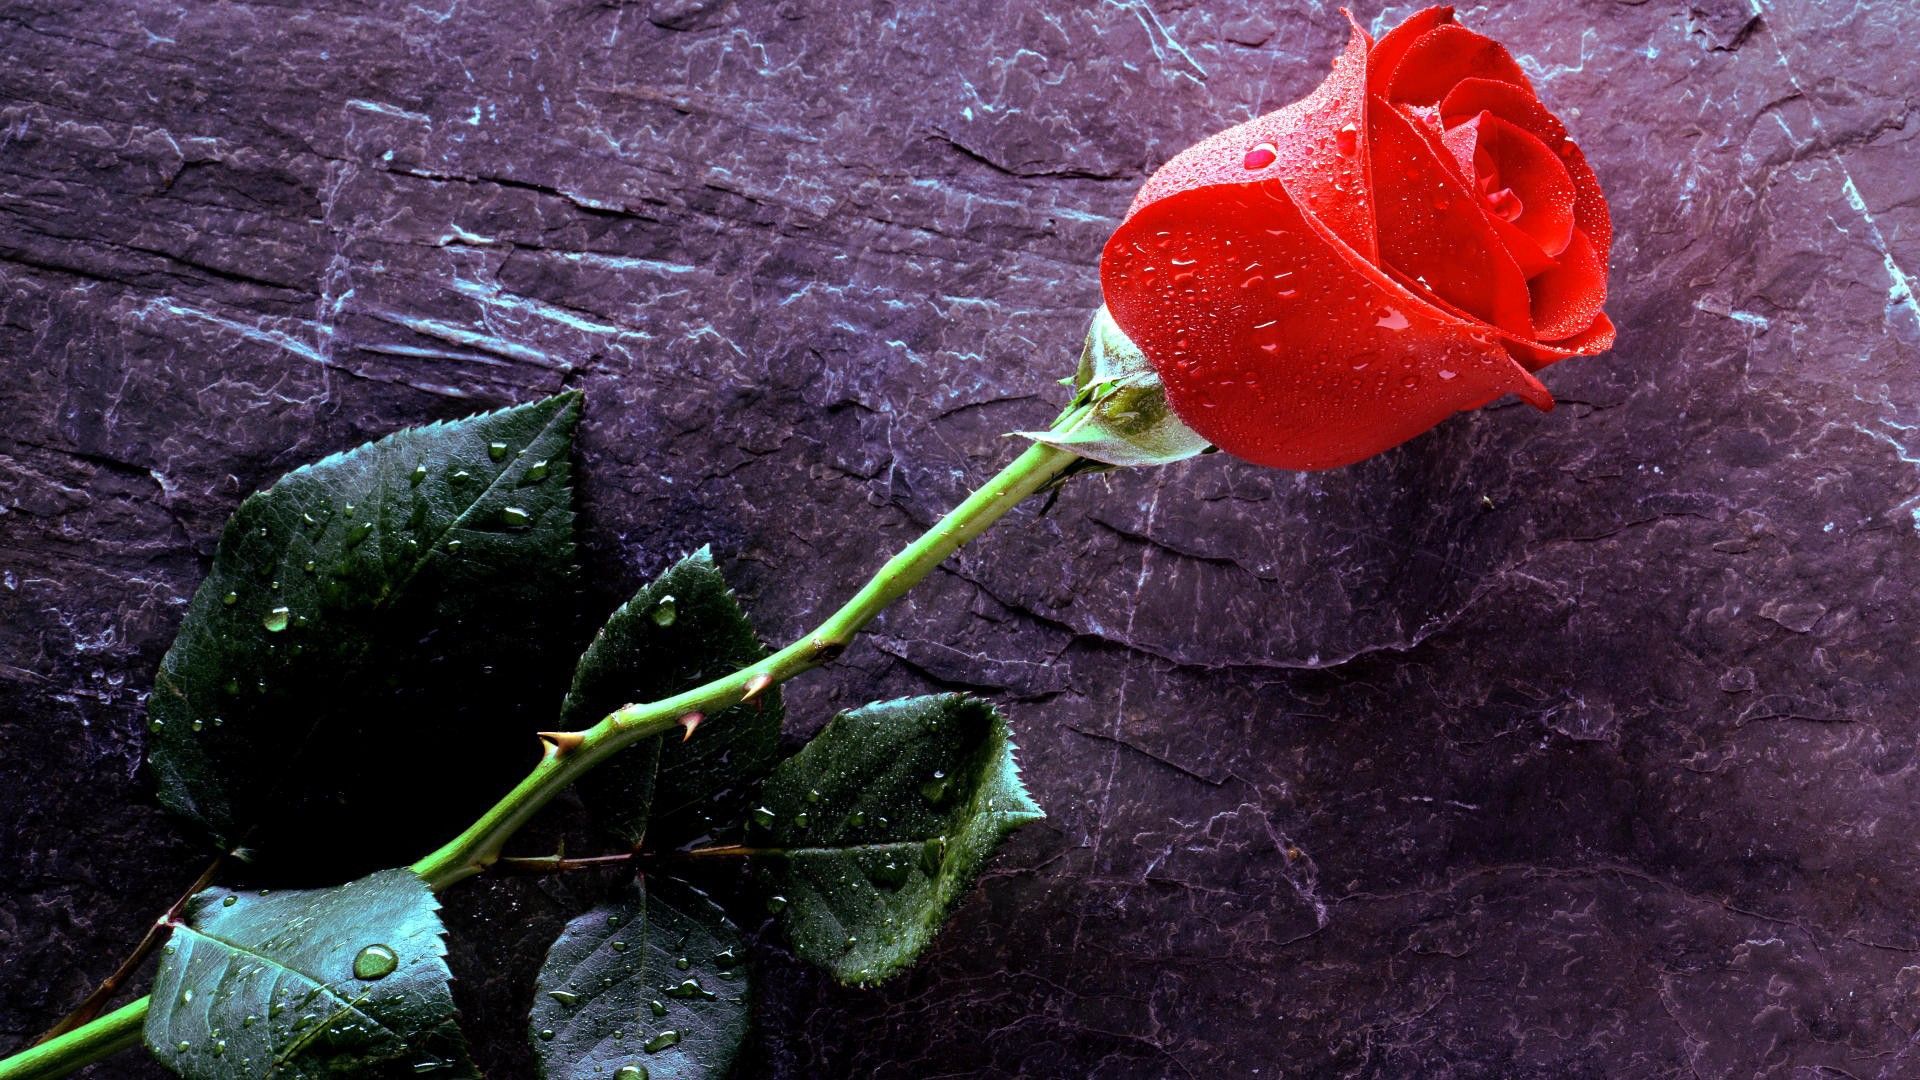 Wet rose on black stone Desktop wallpaper 1680x1050